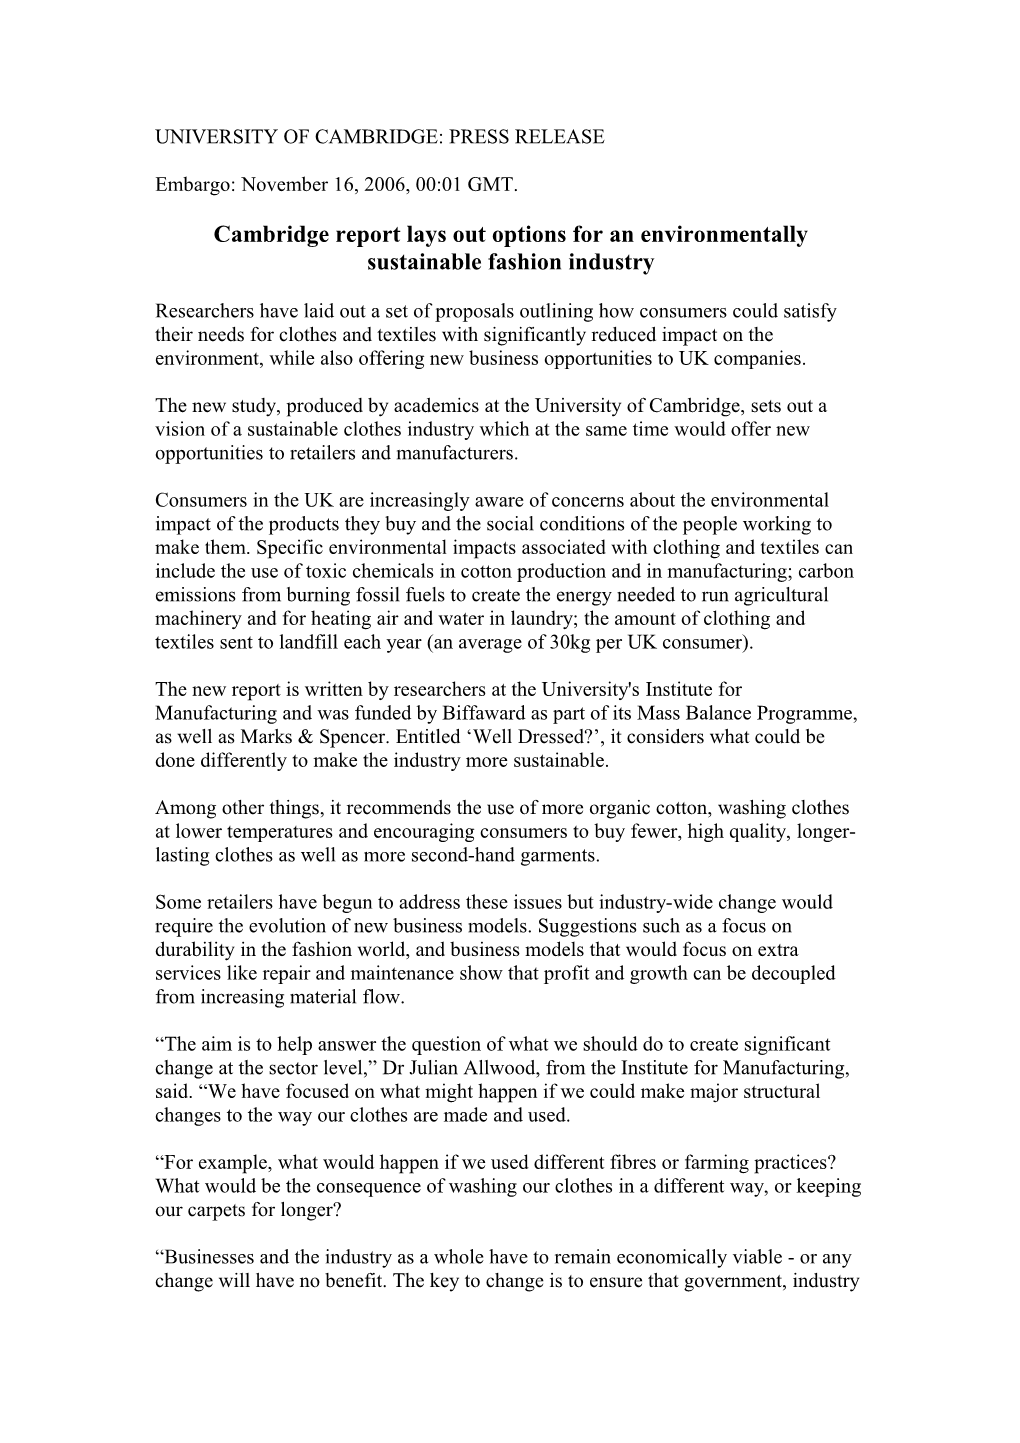 University of Cambridge: Press Release